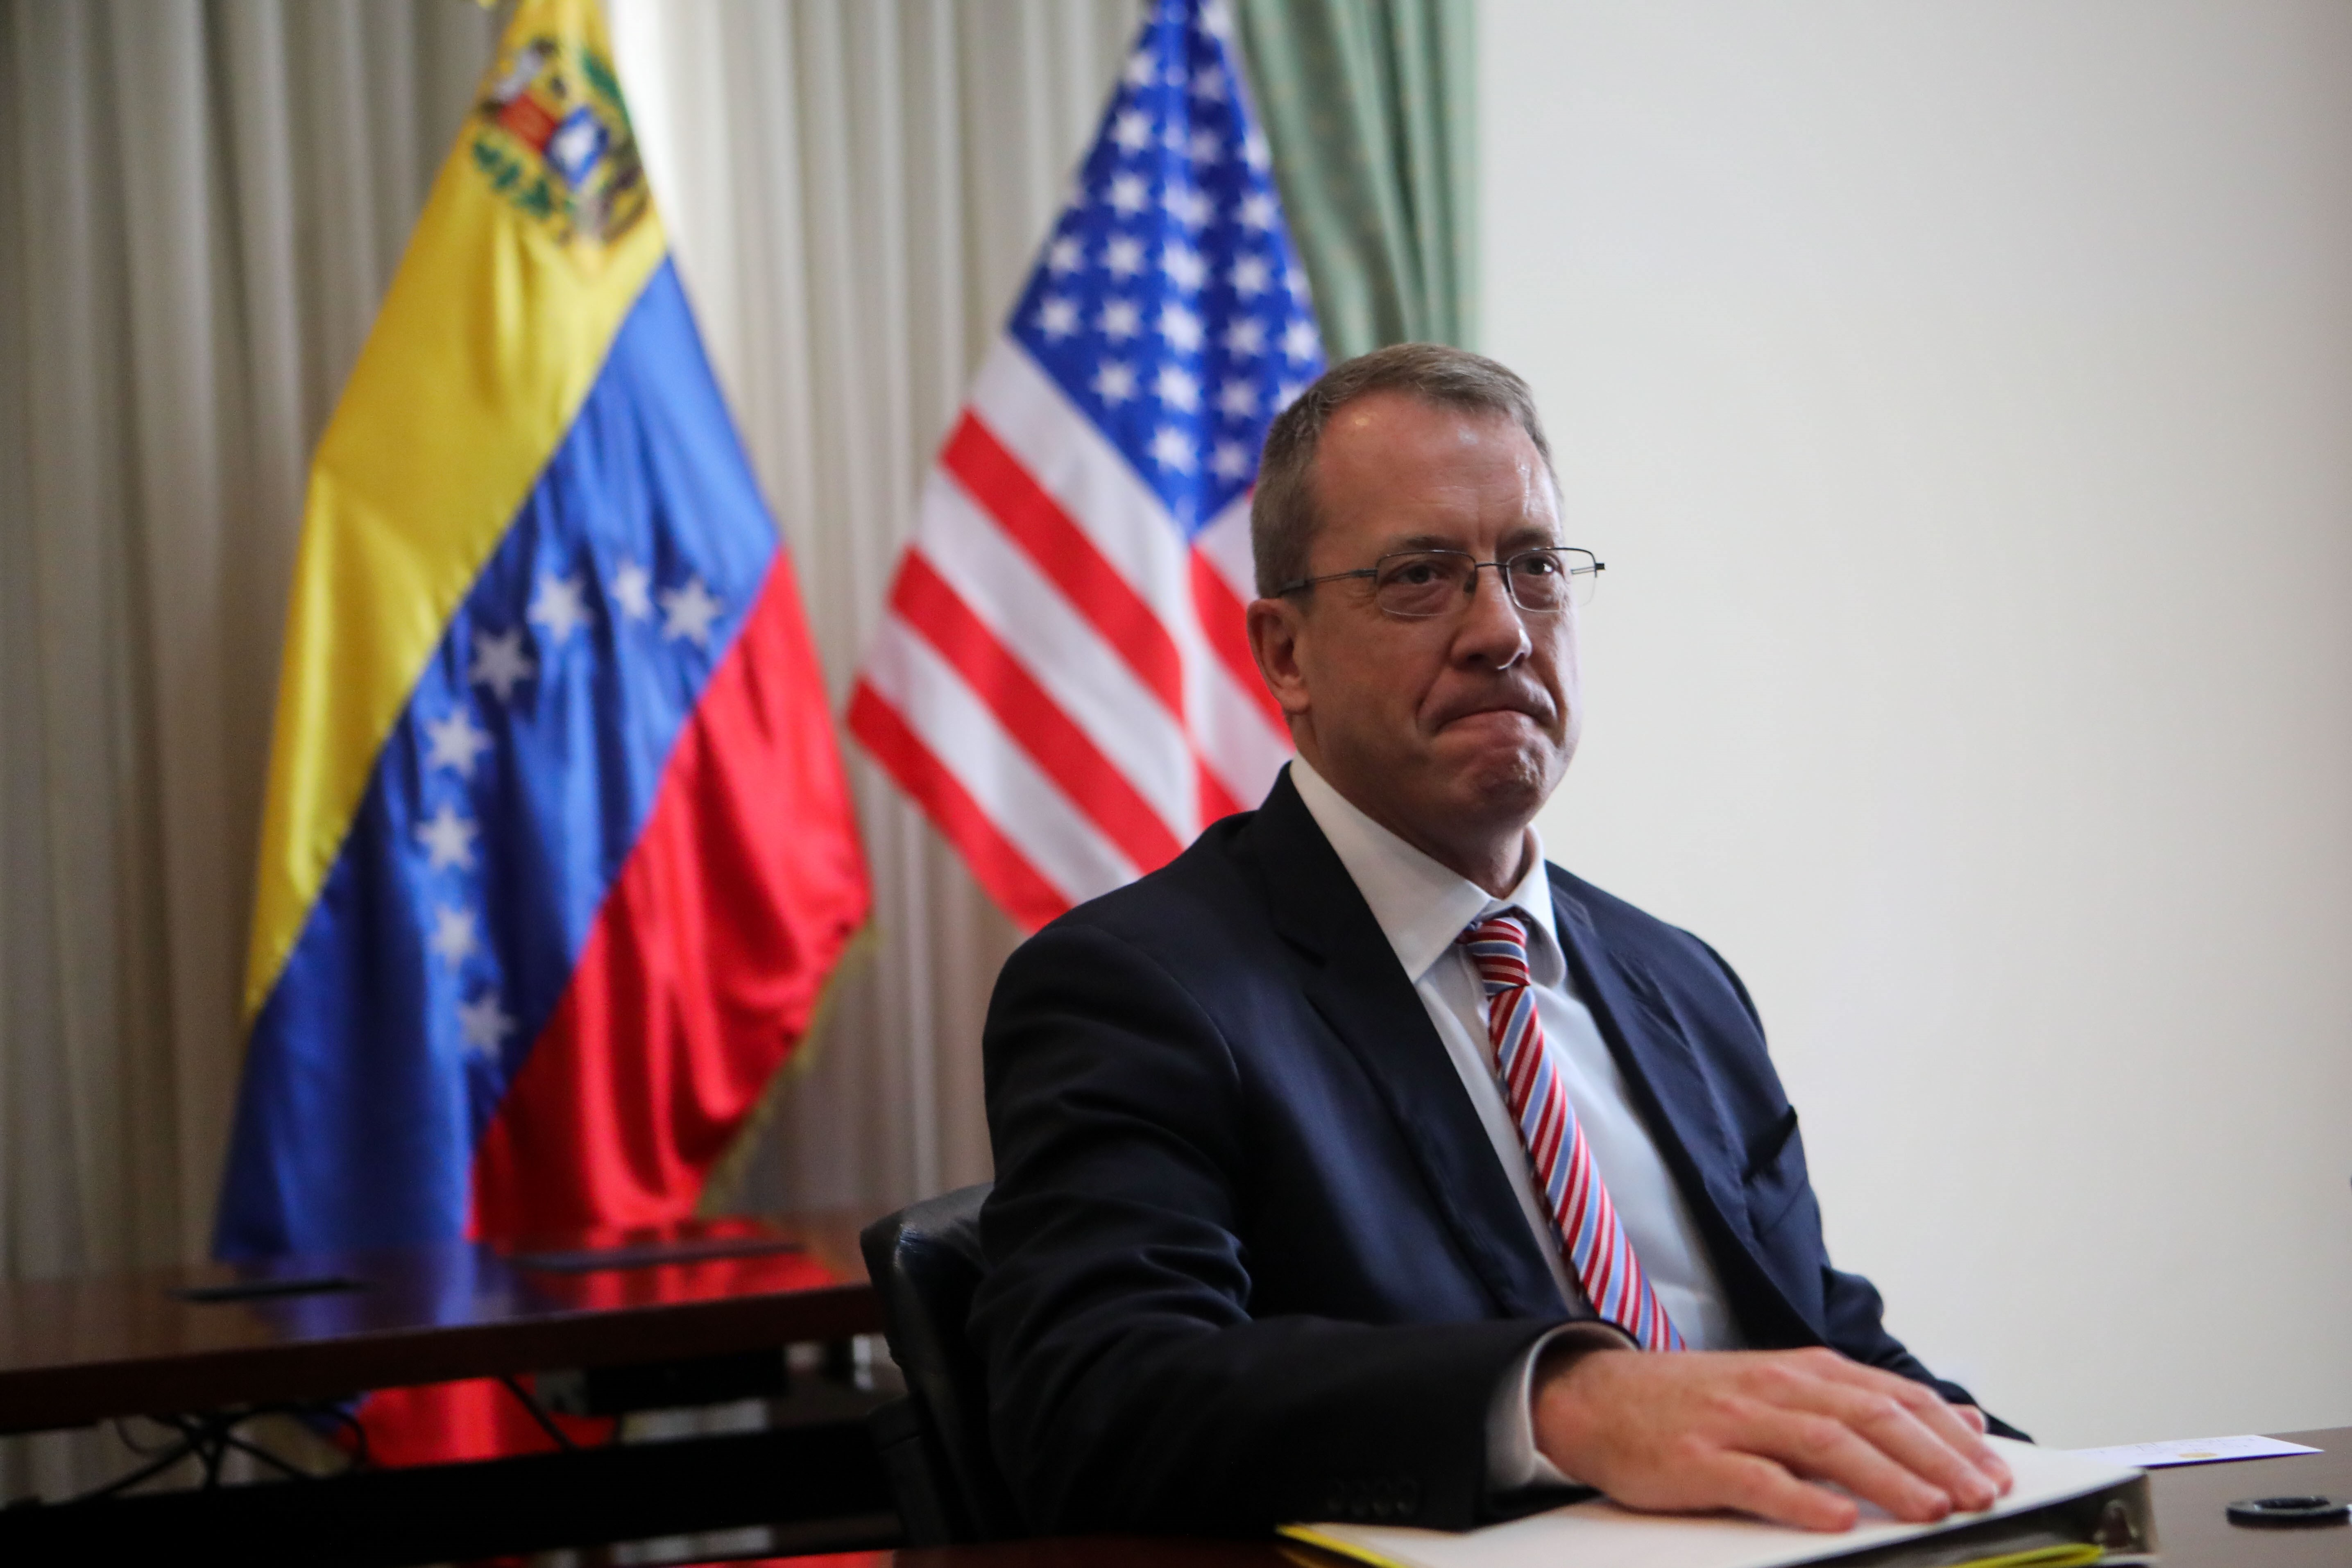 El embajador de EE.UU. pide libertad para el activista venezolano preso hace 400 días